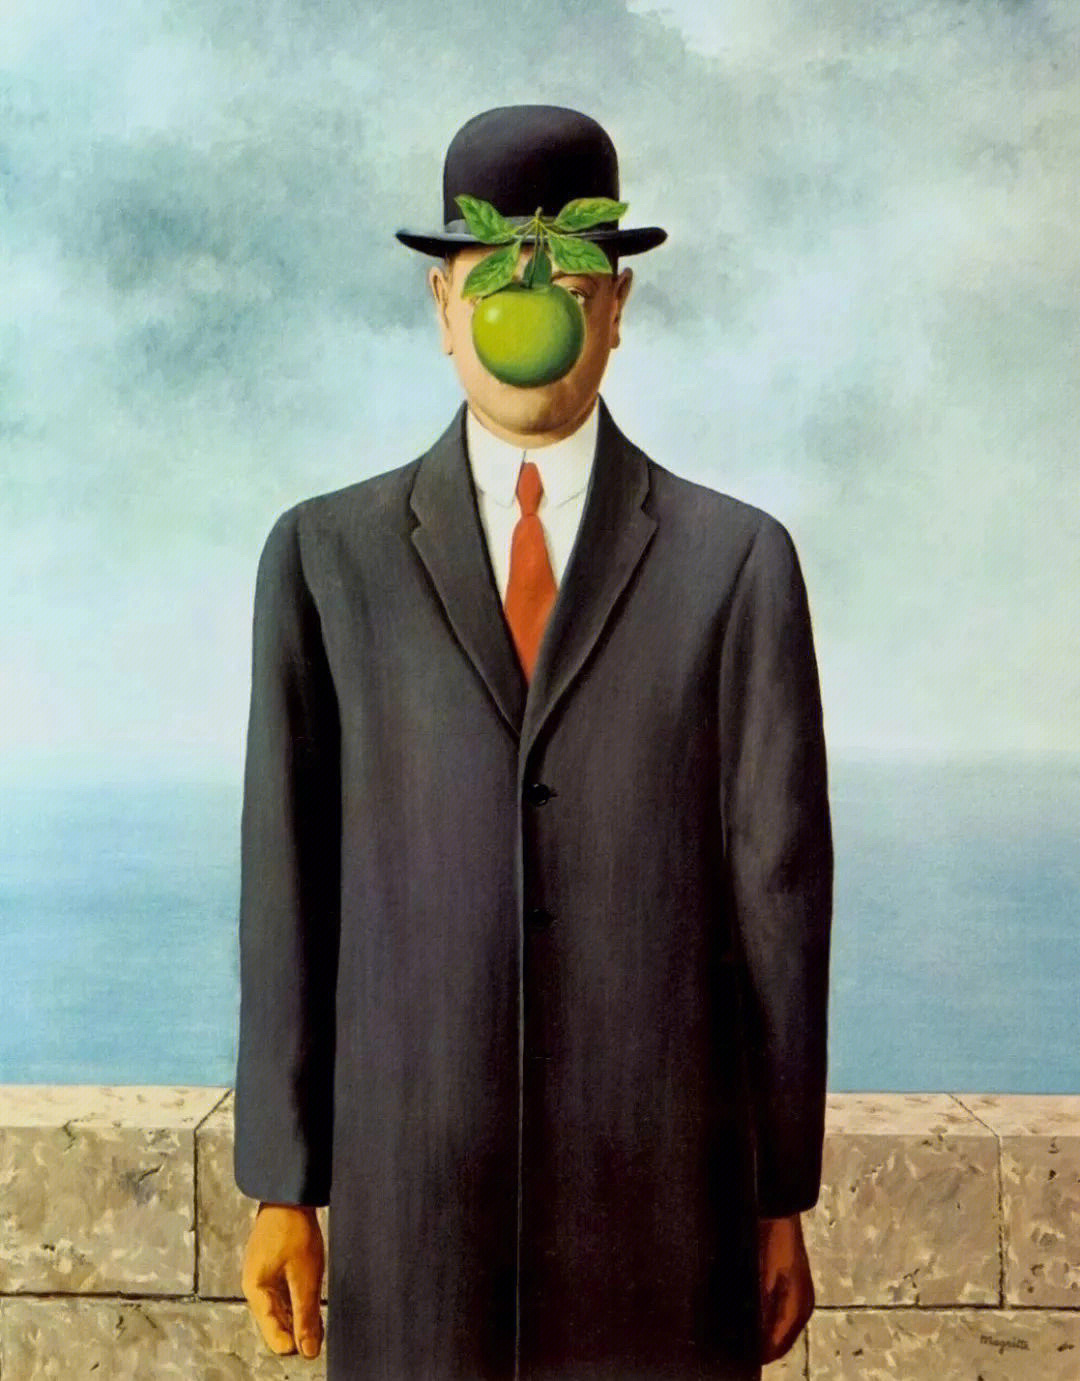 最伟大的作品马格利特和他的绿苹果